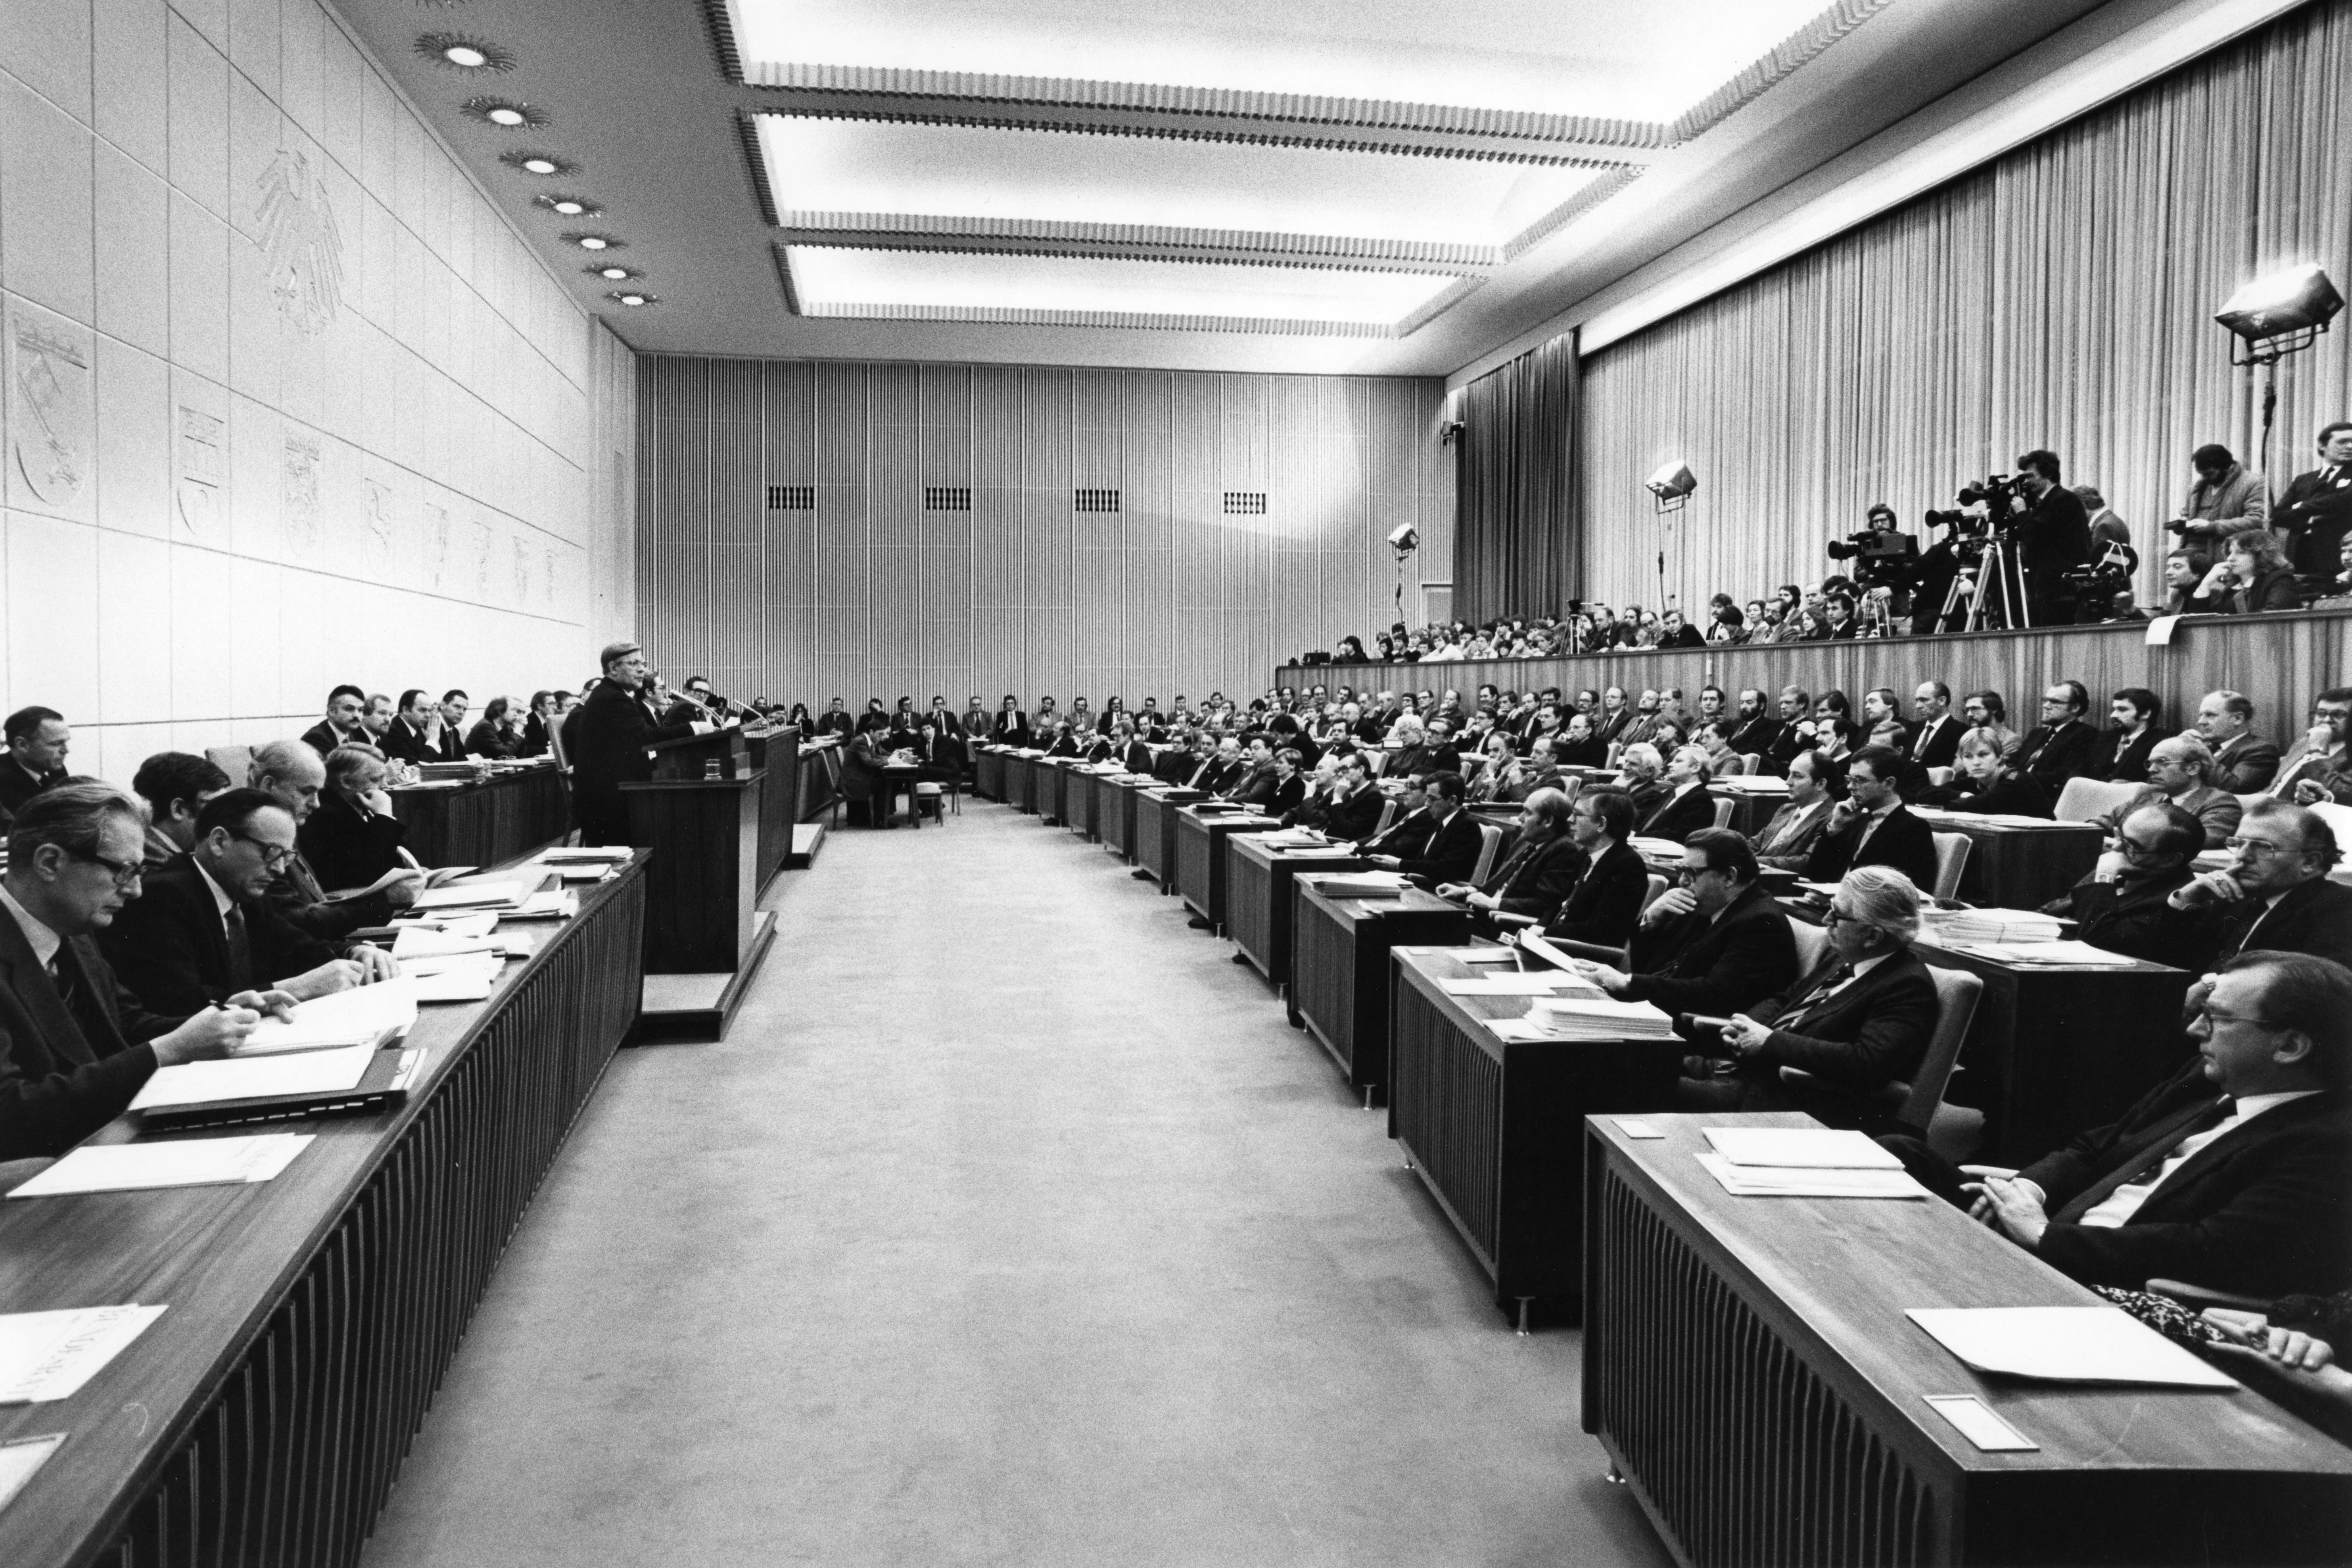 Sitzung des Bundesrates am 19.12.1980. Gruppenaufnahme mit Bundeskanzler Helmut Schmidt, der nach vierjähriger Pause vor dem Bundesrat spricht